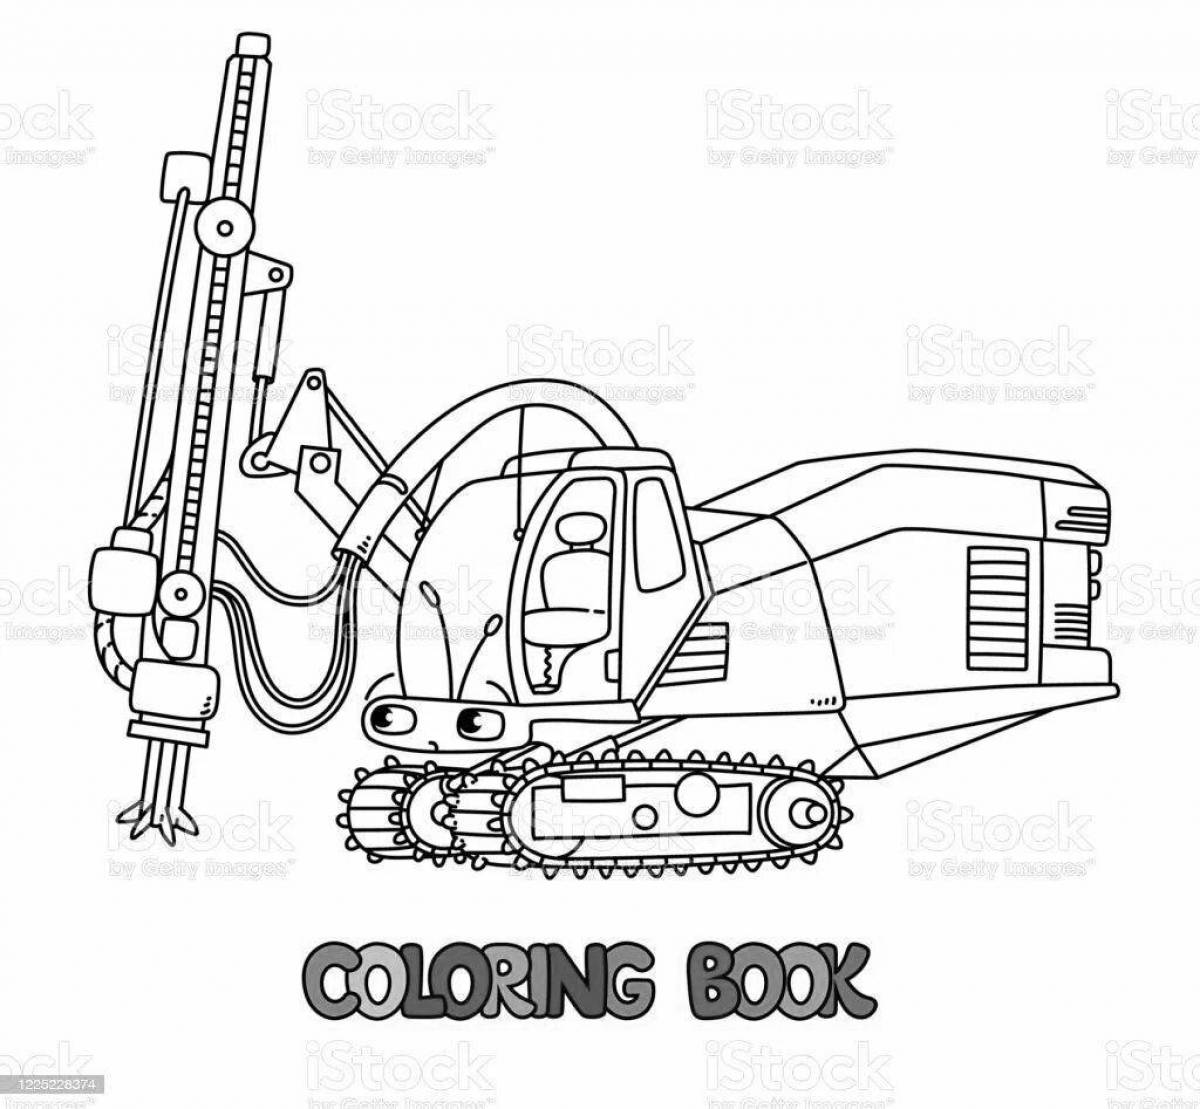 Coloring book humorous drilling machine